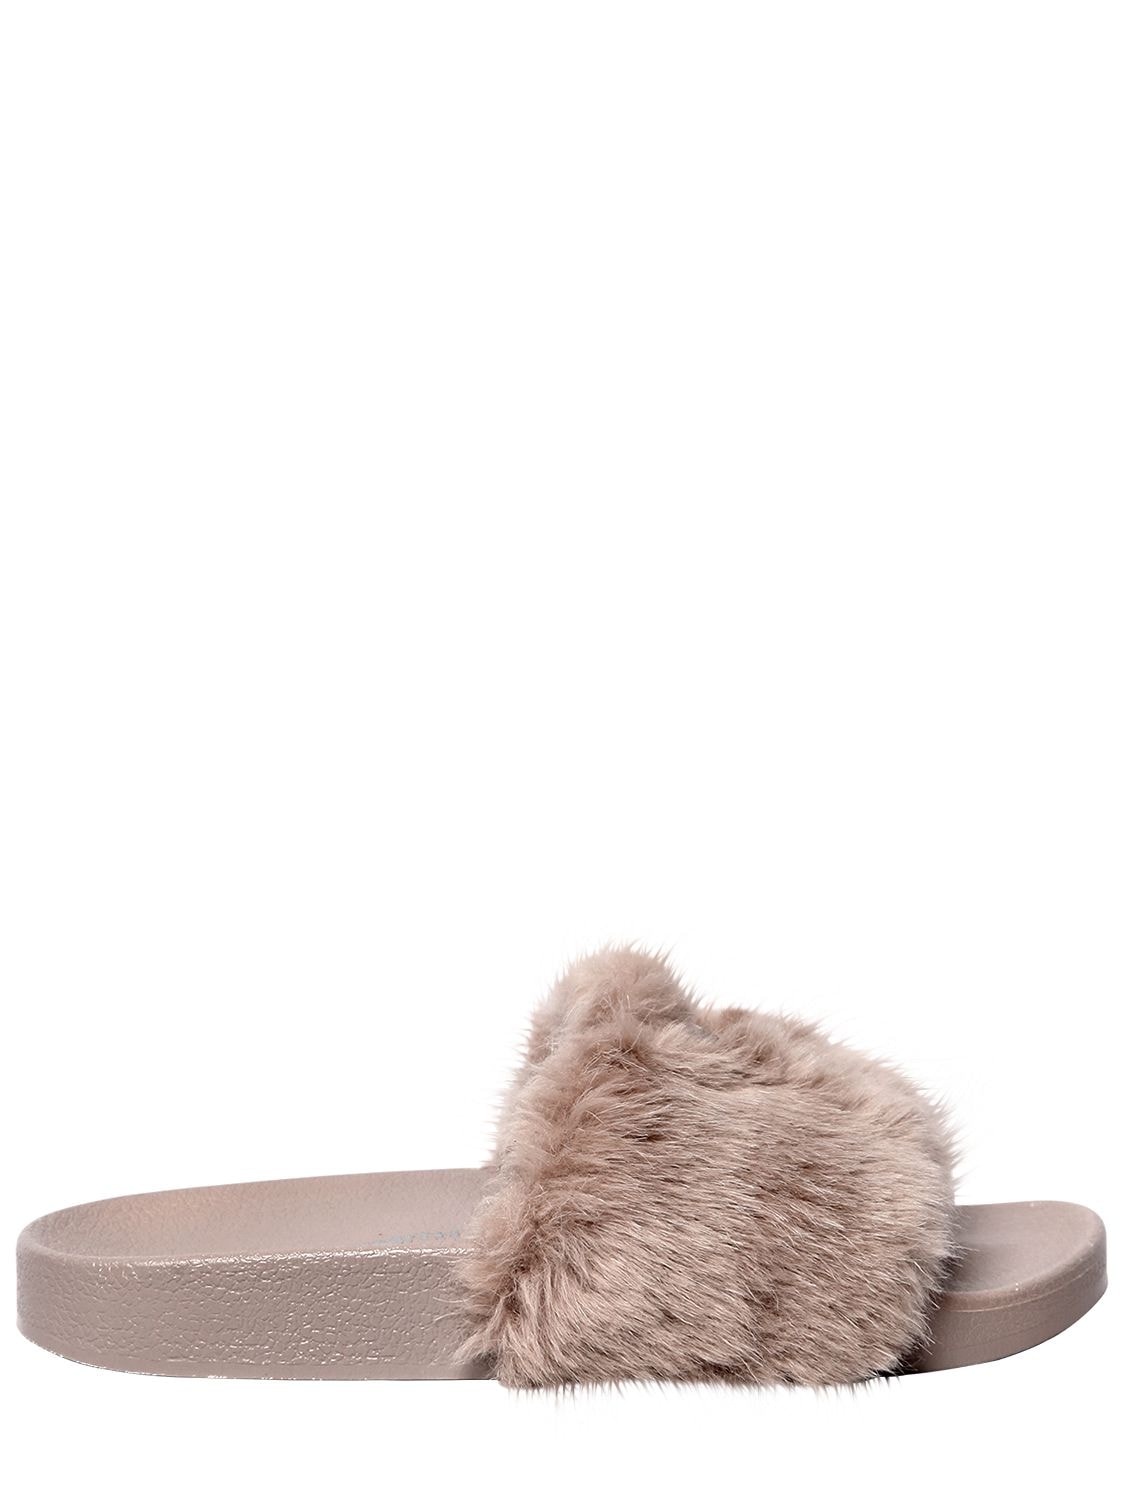 Windsor Smith 20mm Ivy Logo Faux Fur Slide Sandals In Beige